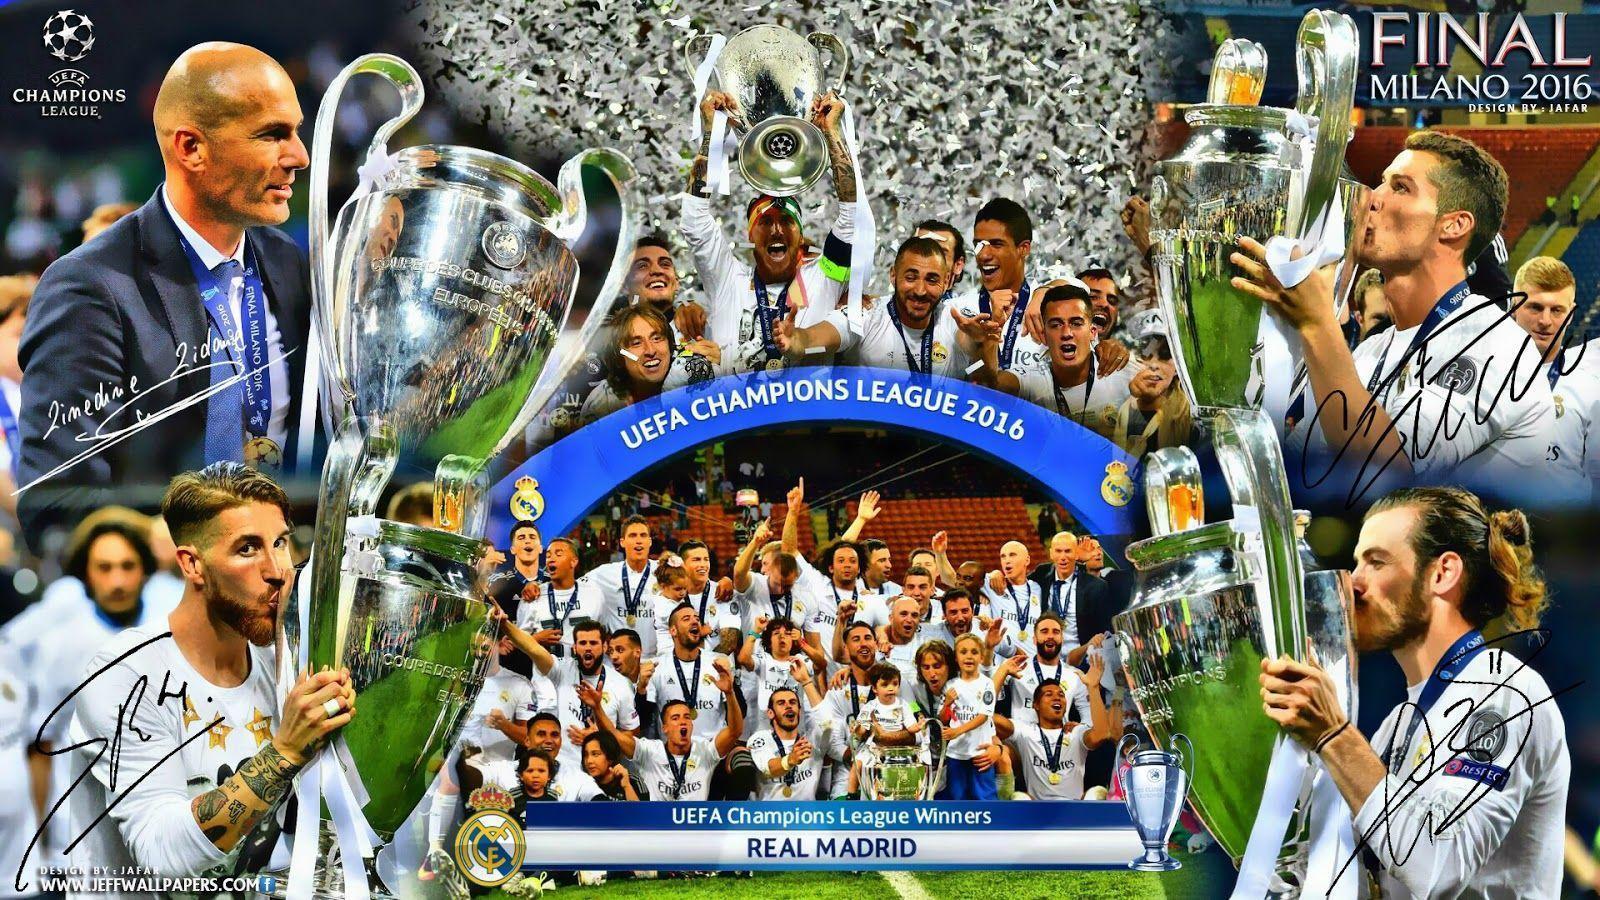 Hình nền Real Madrid sẽ khiến bạn ngất ngây với tinh thần chiến đấu mãnh liệt, chủ động tấn công và triệt để phòng ngự, tạo nên sức ảnh hưởng lớn và danh tiếng toàn cầu.